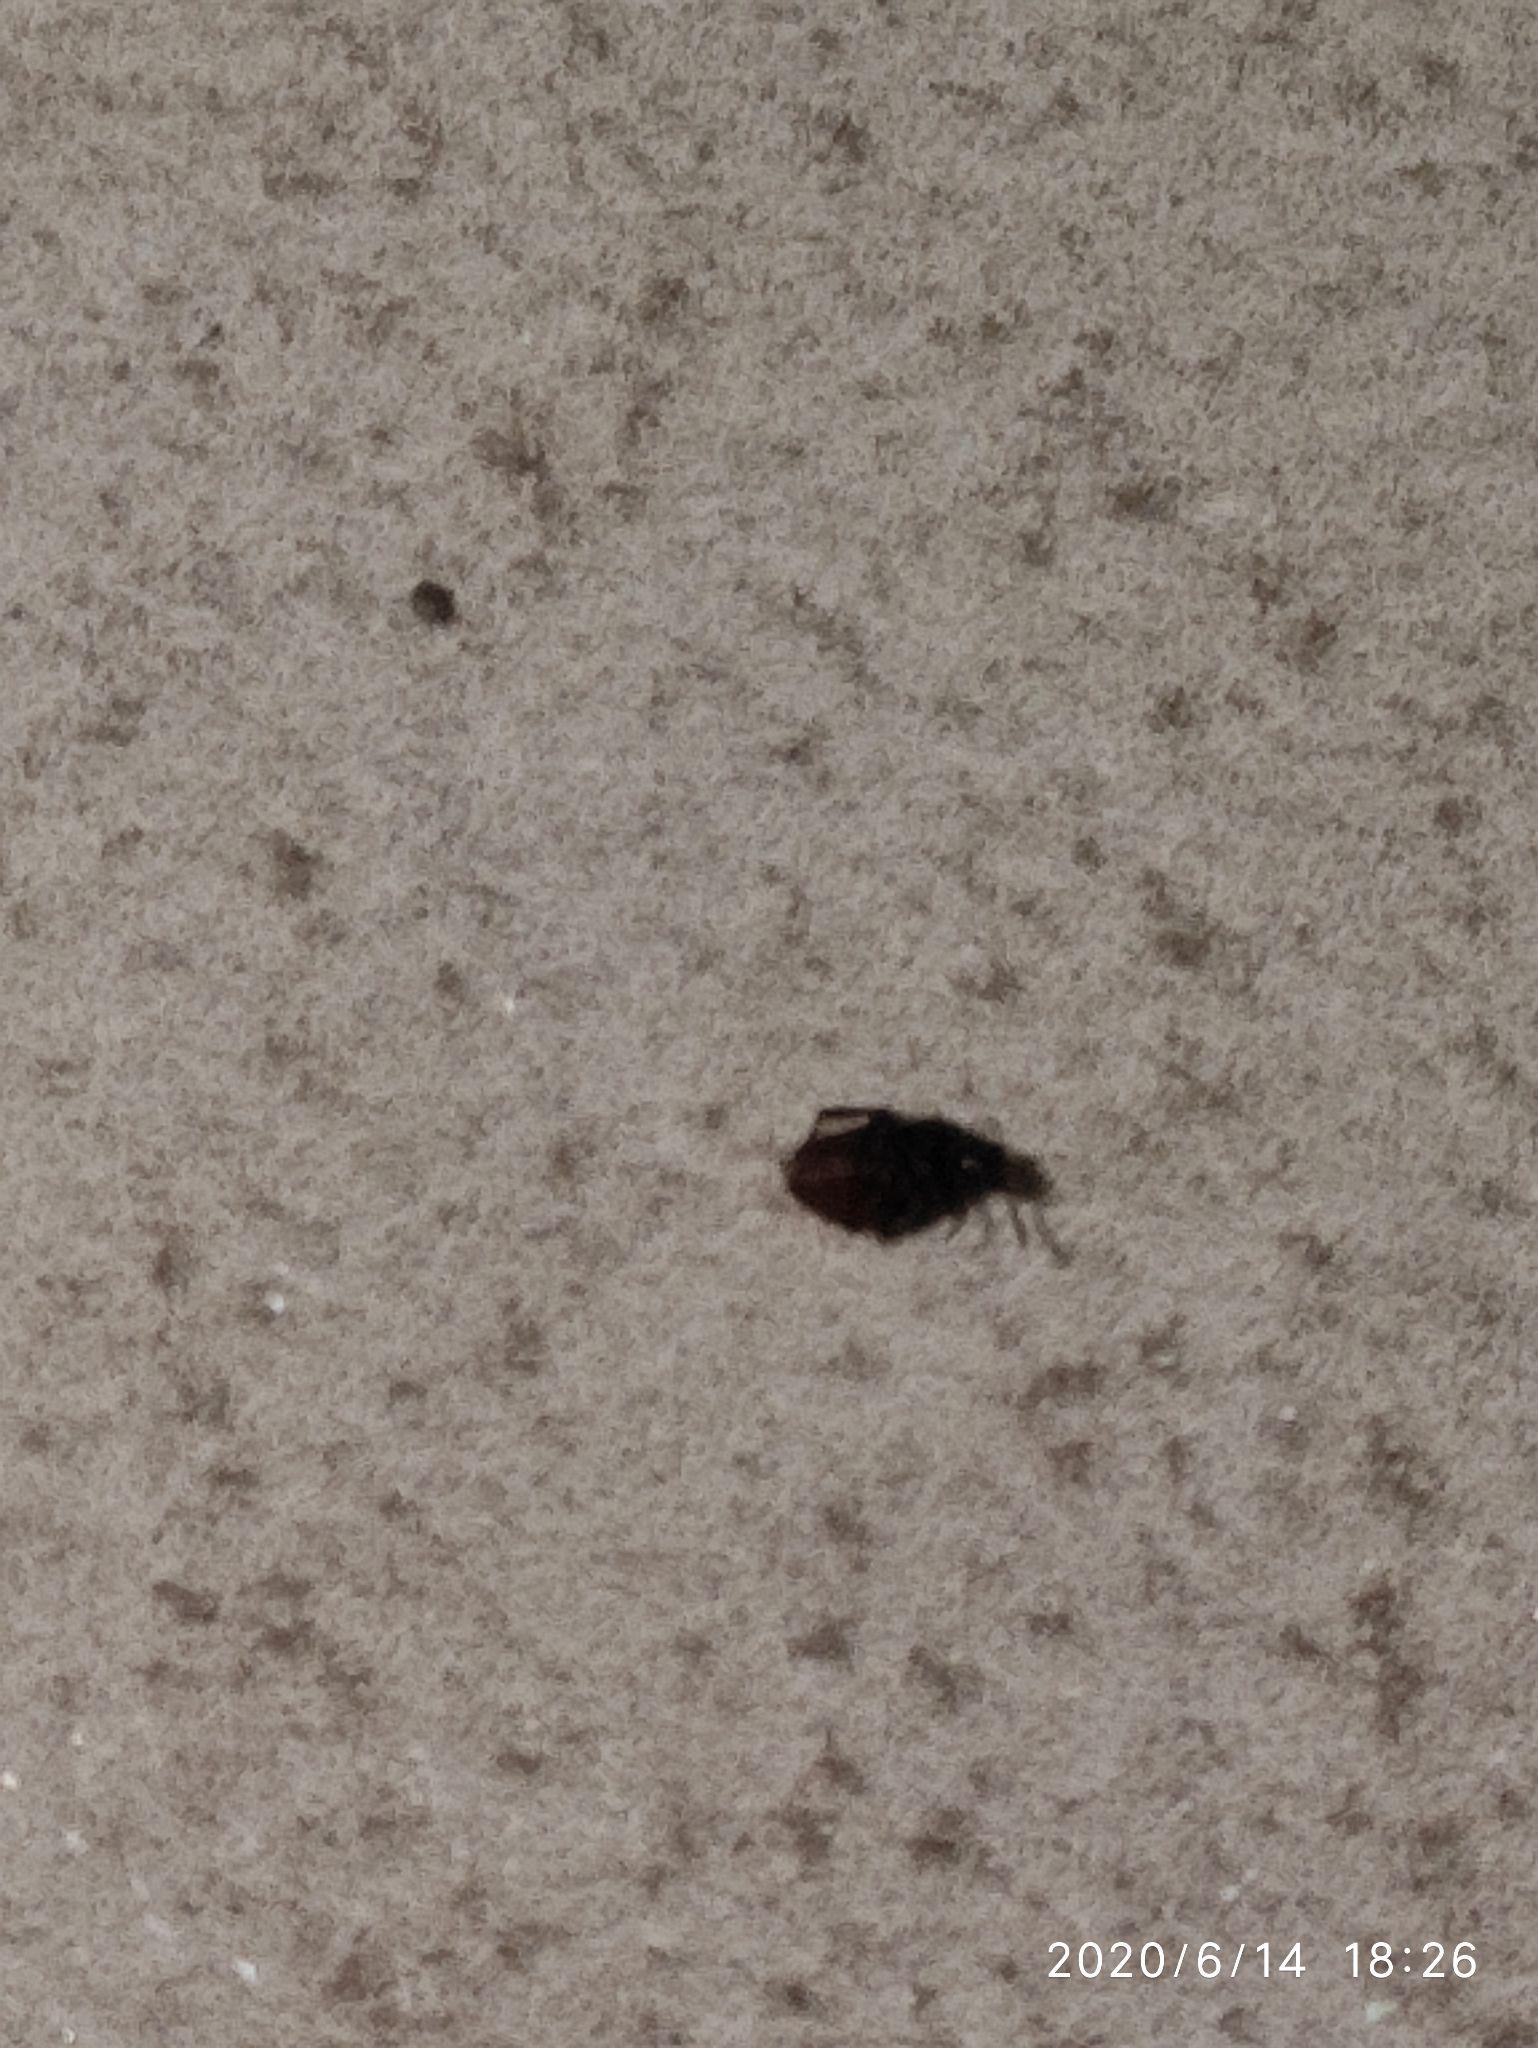 家里床上突然有了小黑虫子，芝麻大小，椭圆型，硬壳的。 这虫子咬人，咬我腿时疼一下被发现了，一摸掉在_百度知道